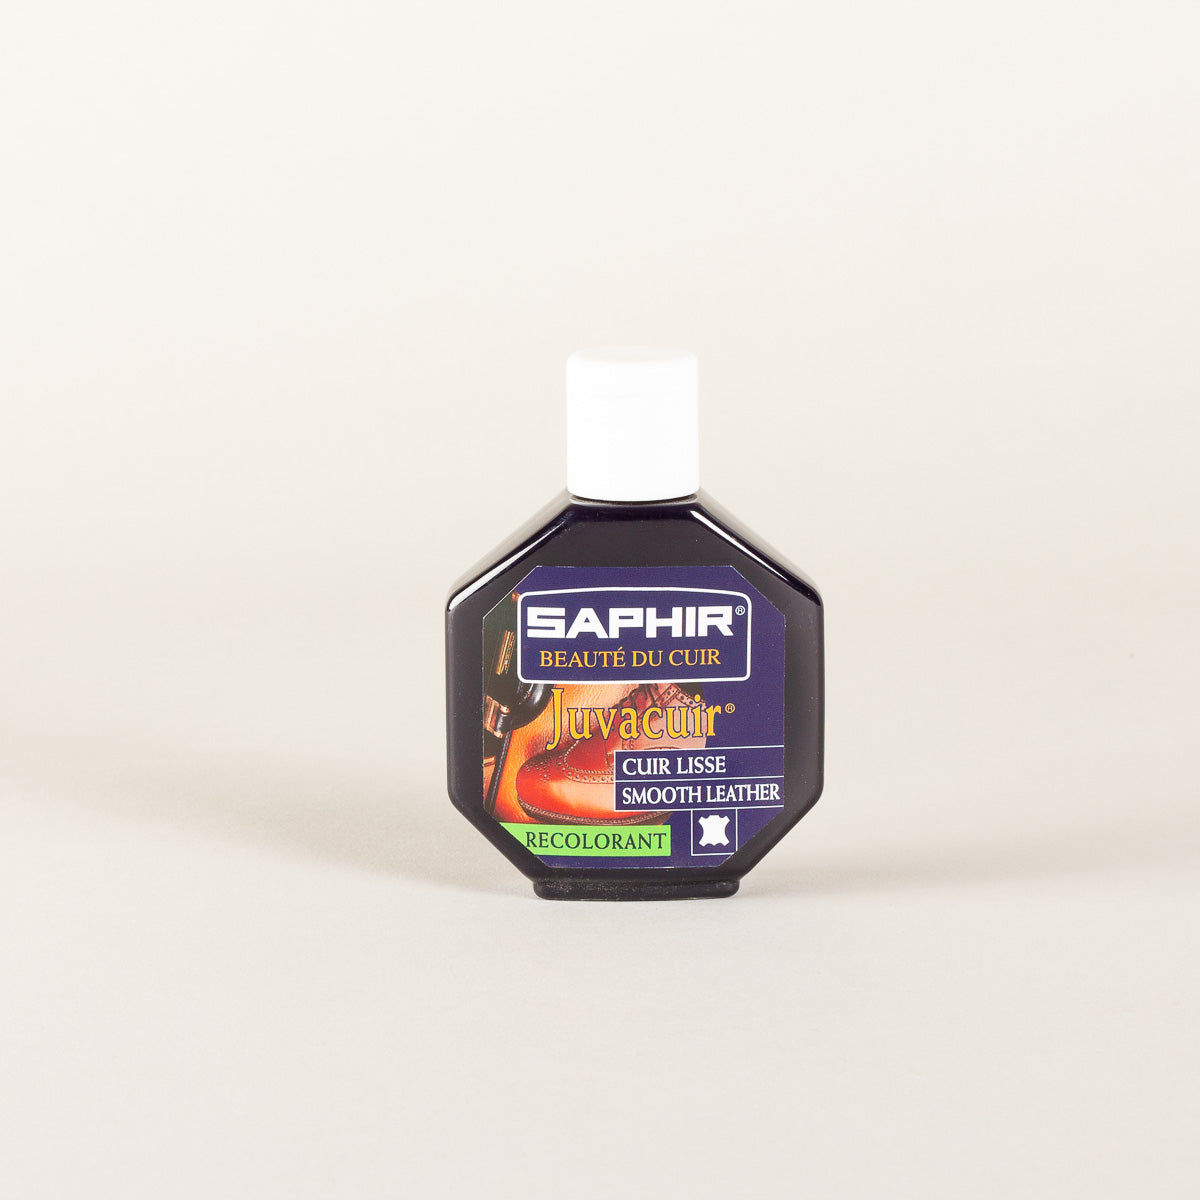 Saphir Juvacuir cream